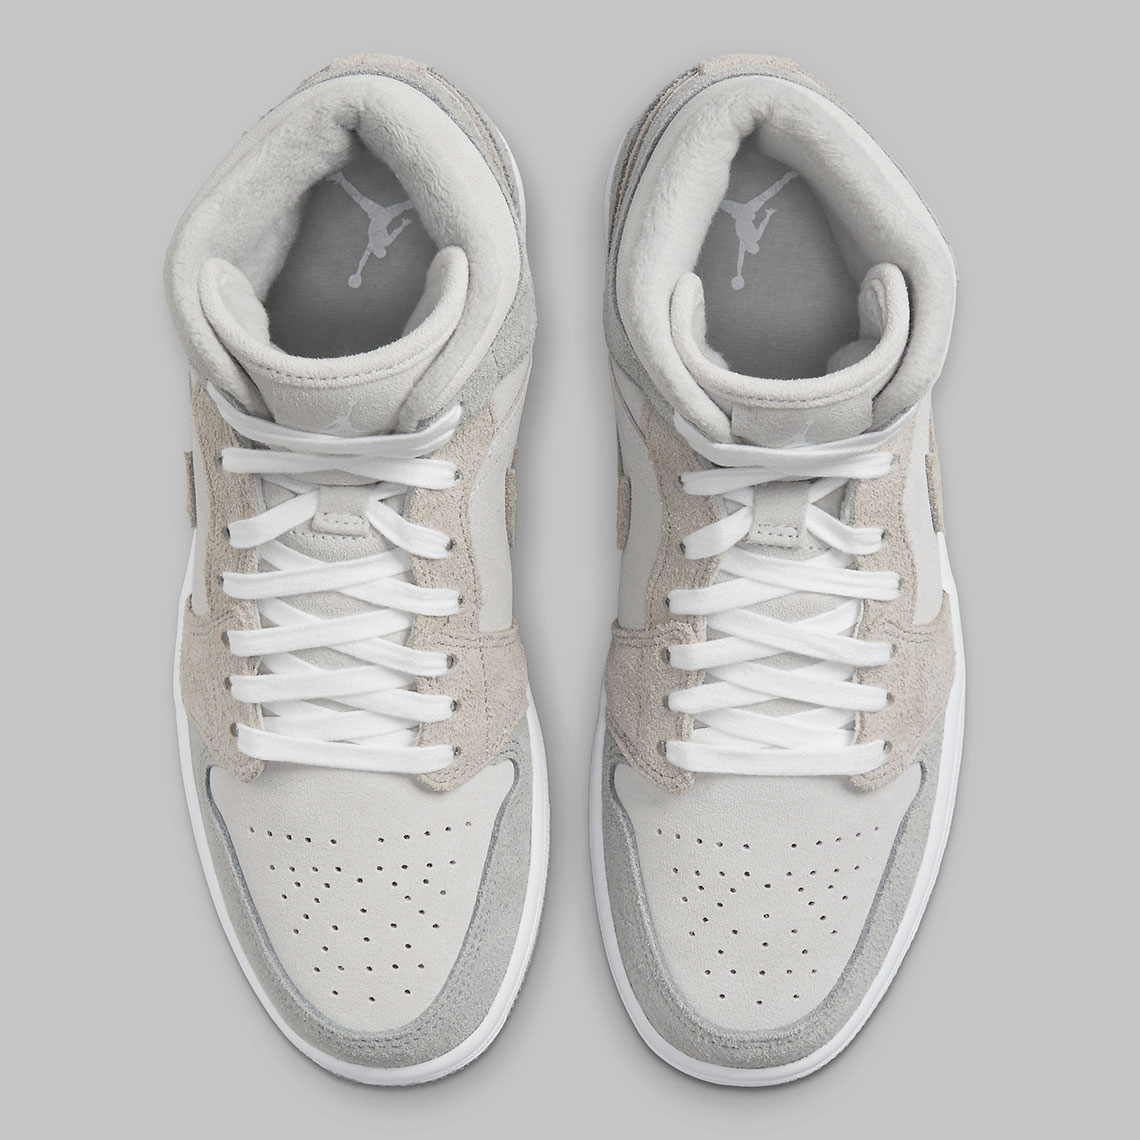 Jordan Kids Air Jordan 1 Retro High Sneakers Mehrfarbig Particle Grey Release Date 2